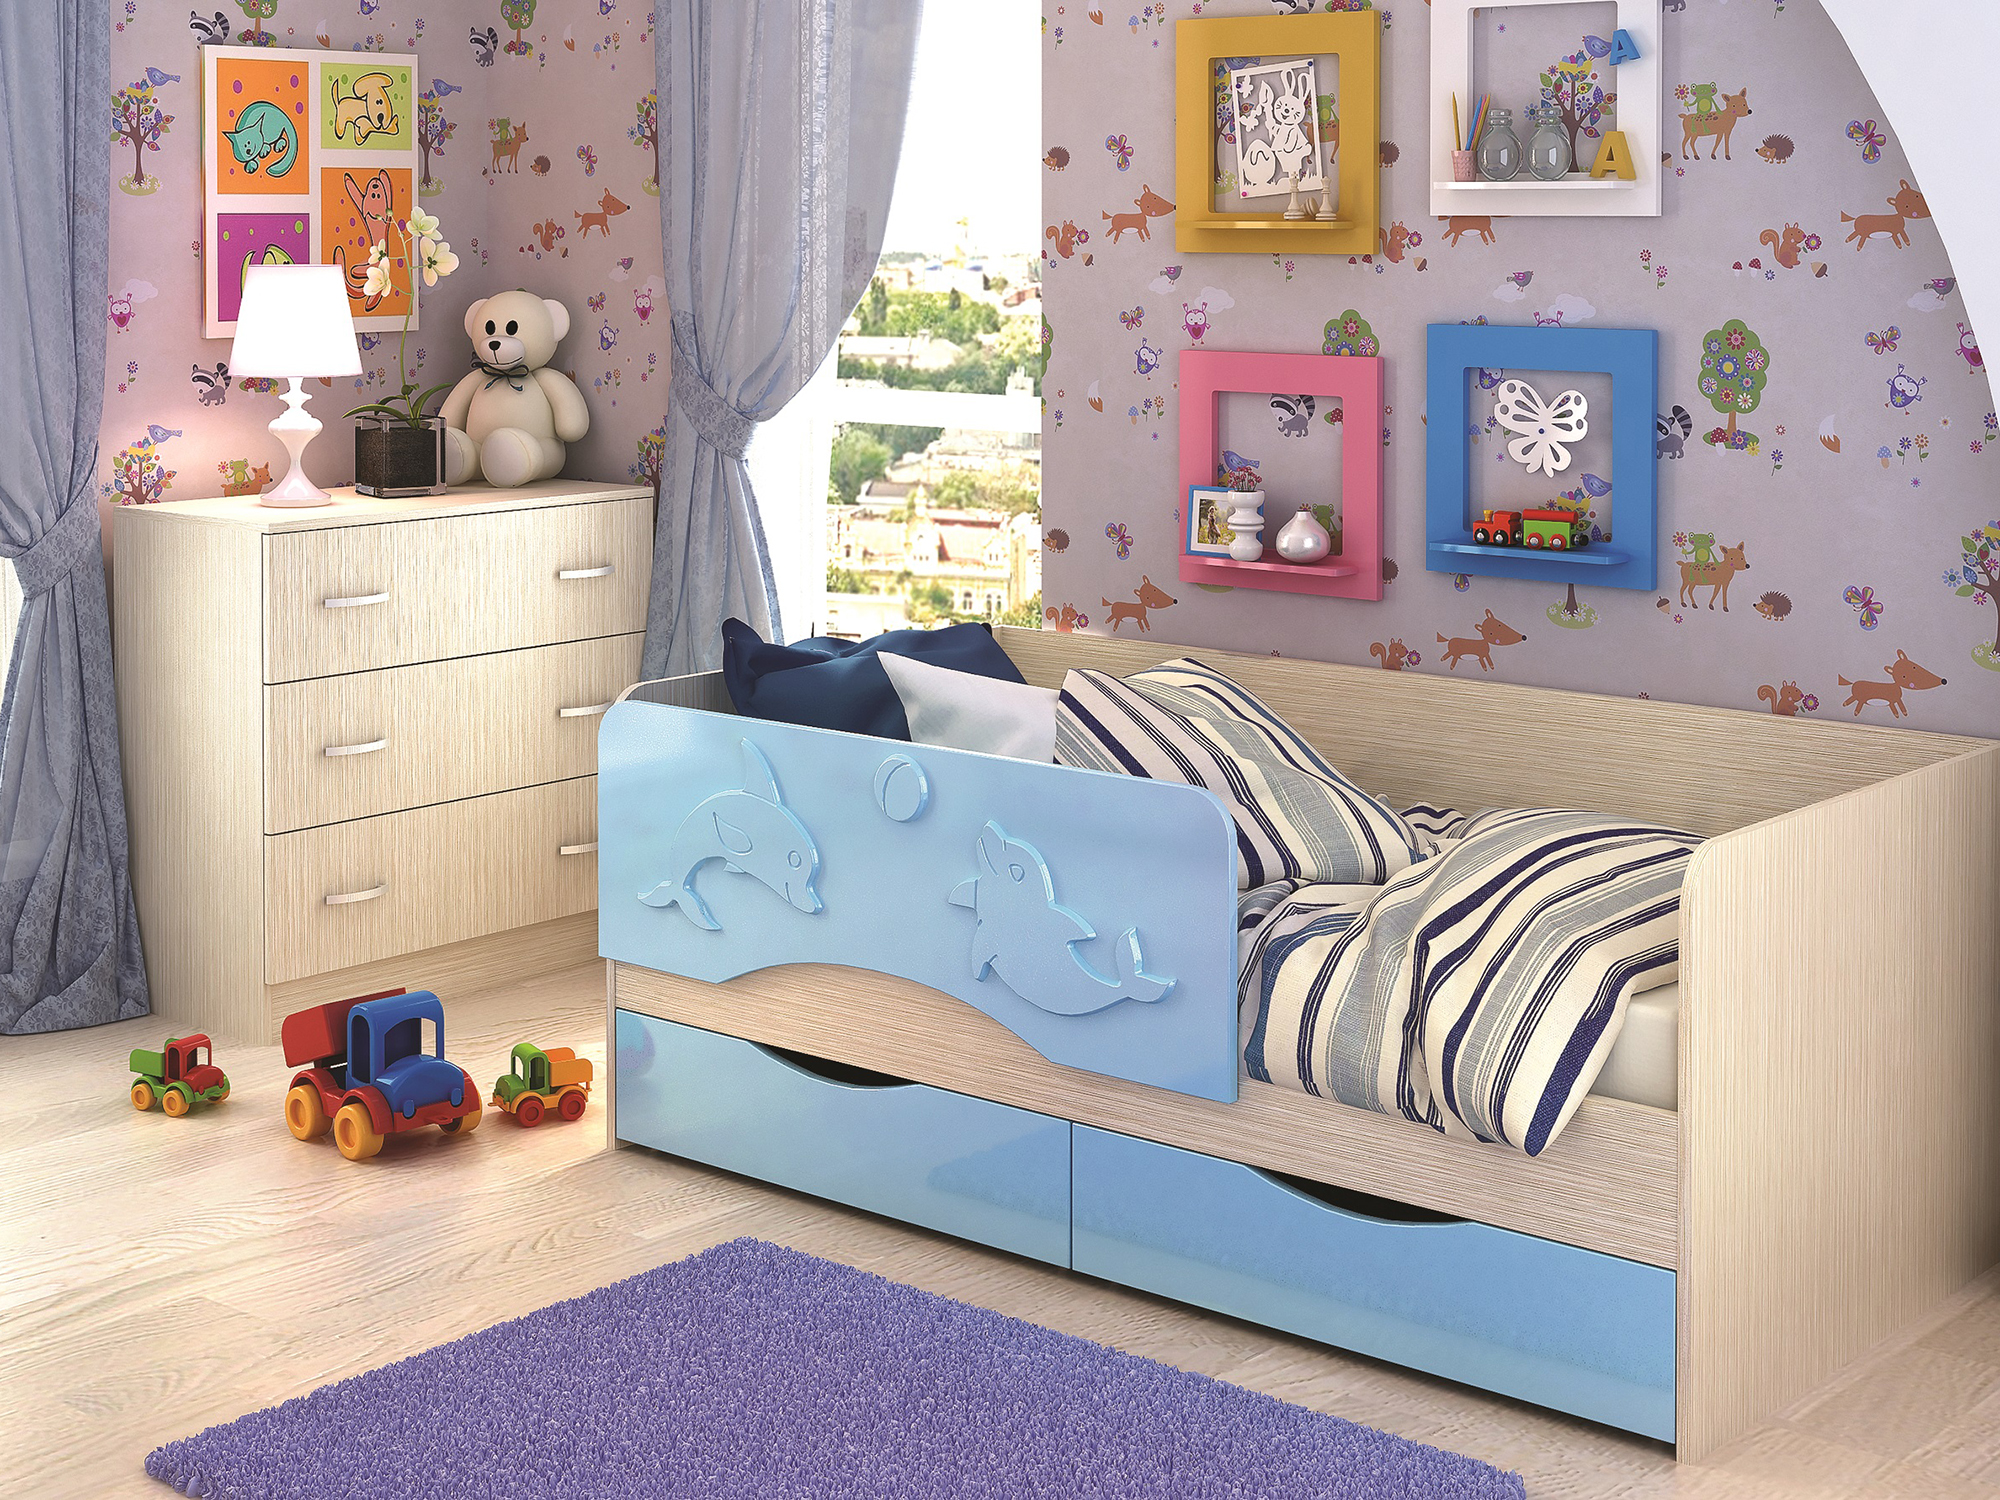 Кровать Алиса (80х160) Голубой, Бежевый, МДФ, ЛДСП цена и фото